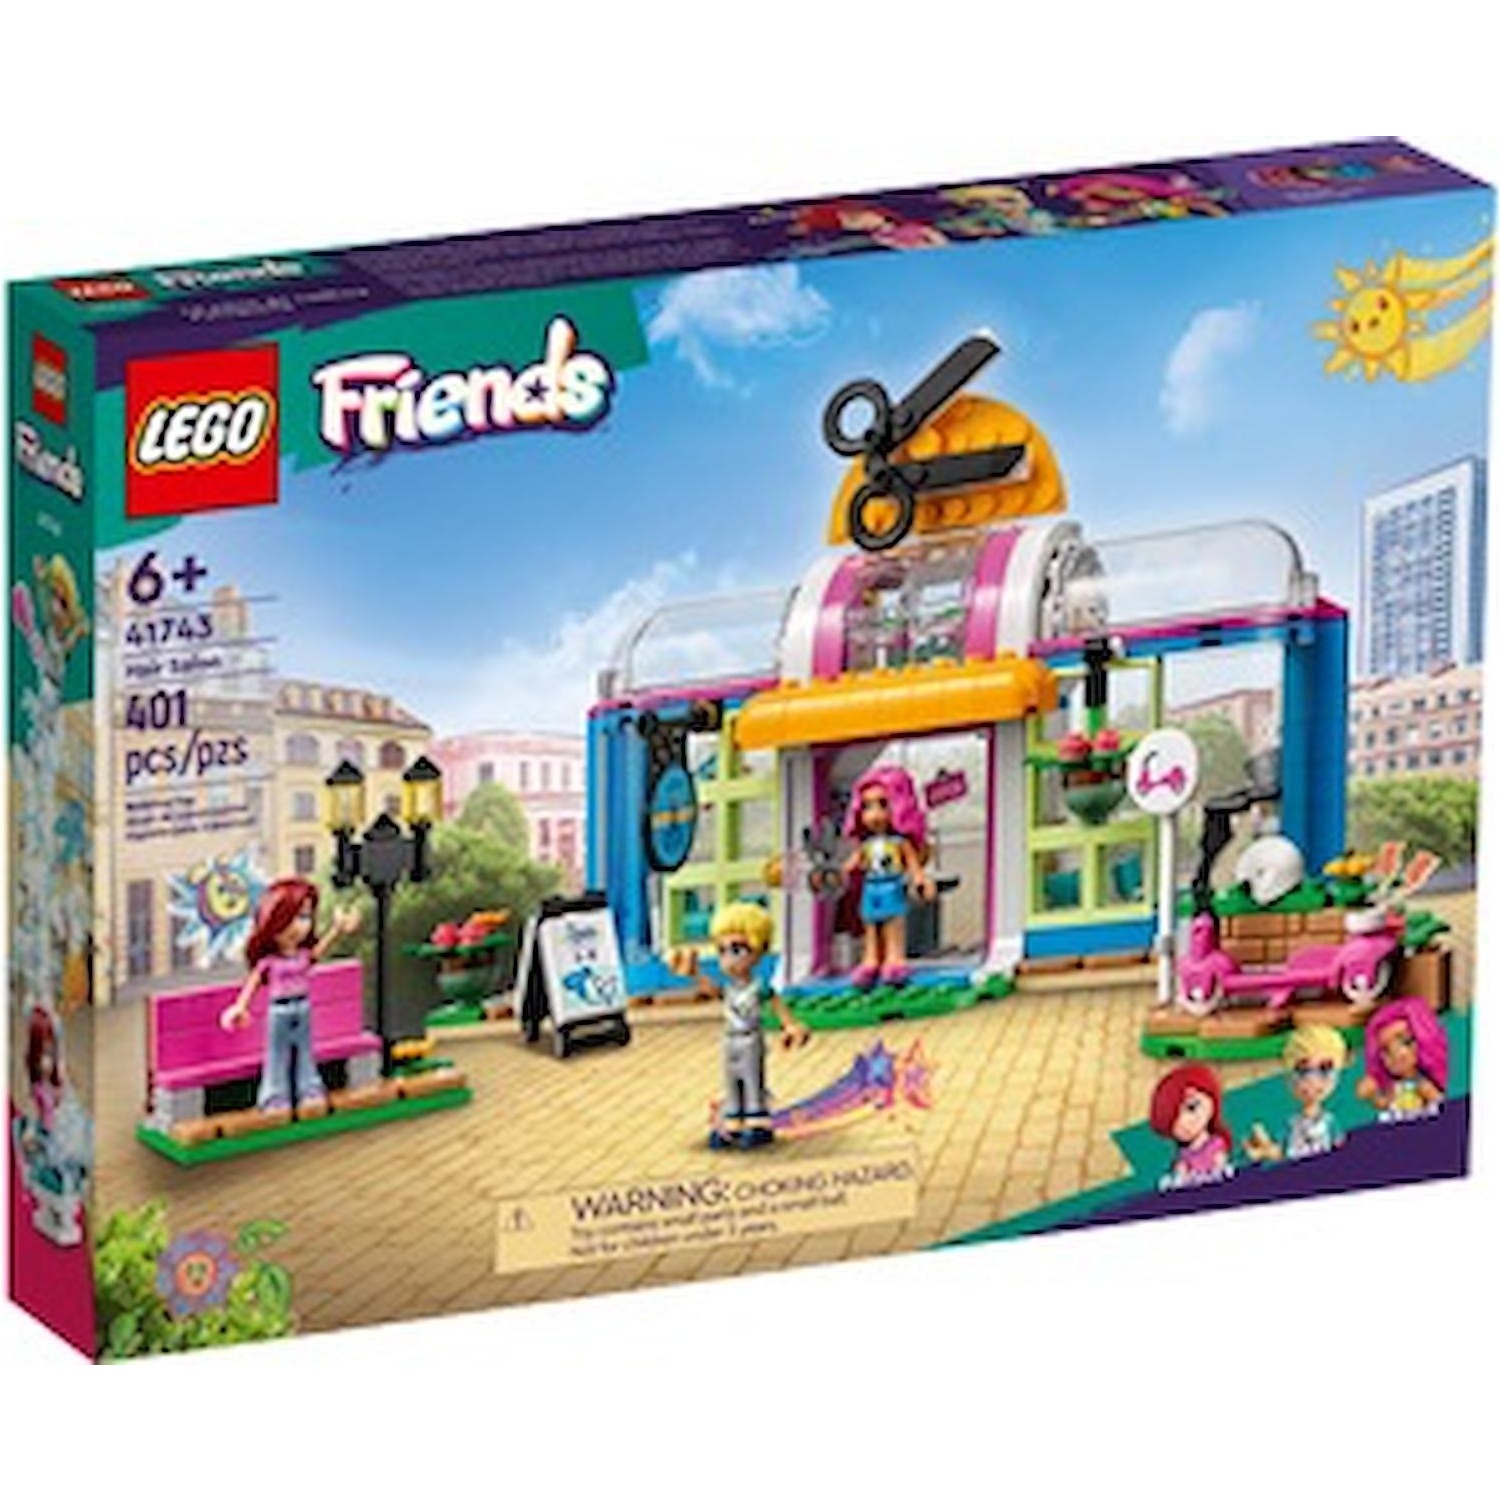 Immagine per Lego Friends Parrucchiere da DIMOStore